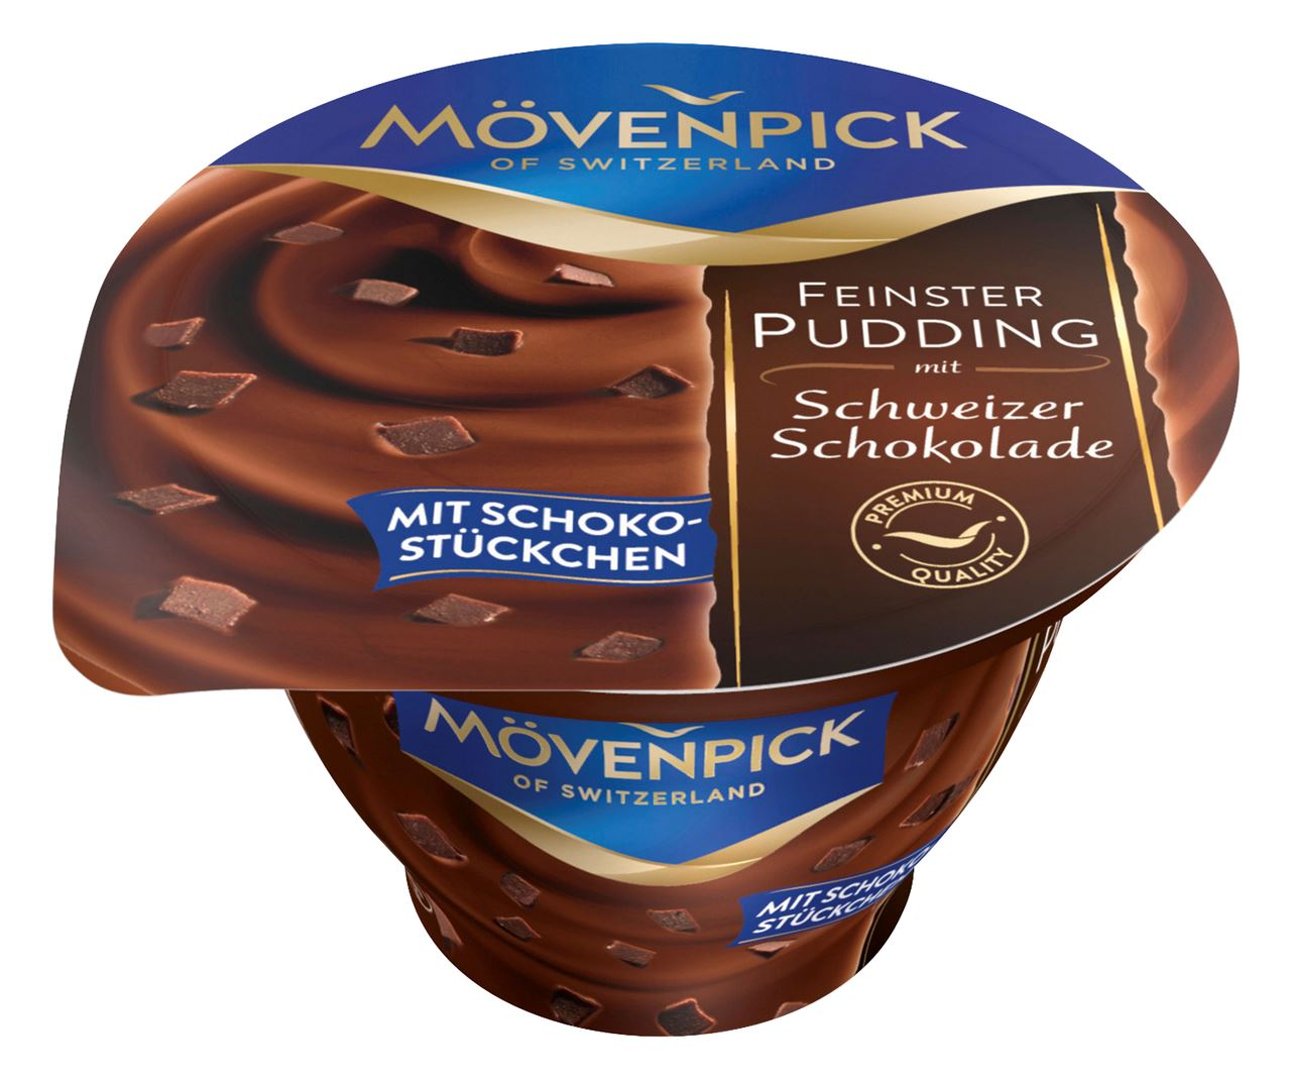 Mövenpick - Feinster Pudding Schweizer Schokolade mit Schokostückchen - 150 g Becher